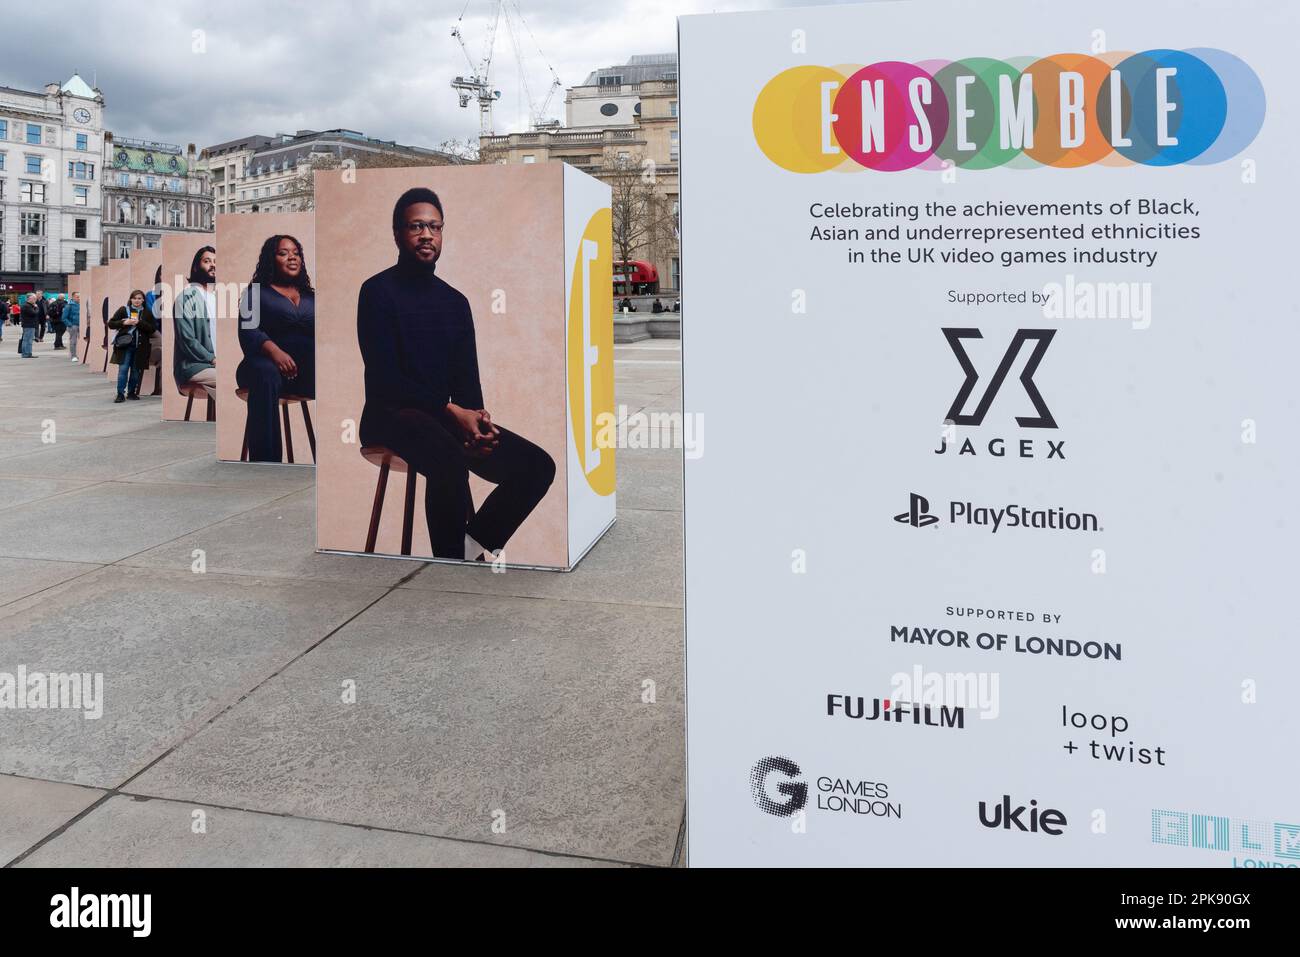 Ensemble - esposizione pubblica d'arte che mette in mostra i talenti dei videogiochi britannici da etnie nere, asiatiche e sottorappresentate, come parte del Festival dei Giochi di Londra. Foto Stock